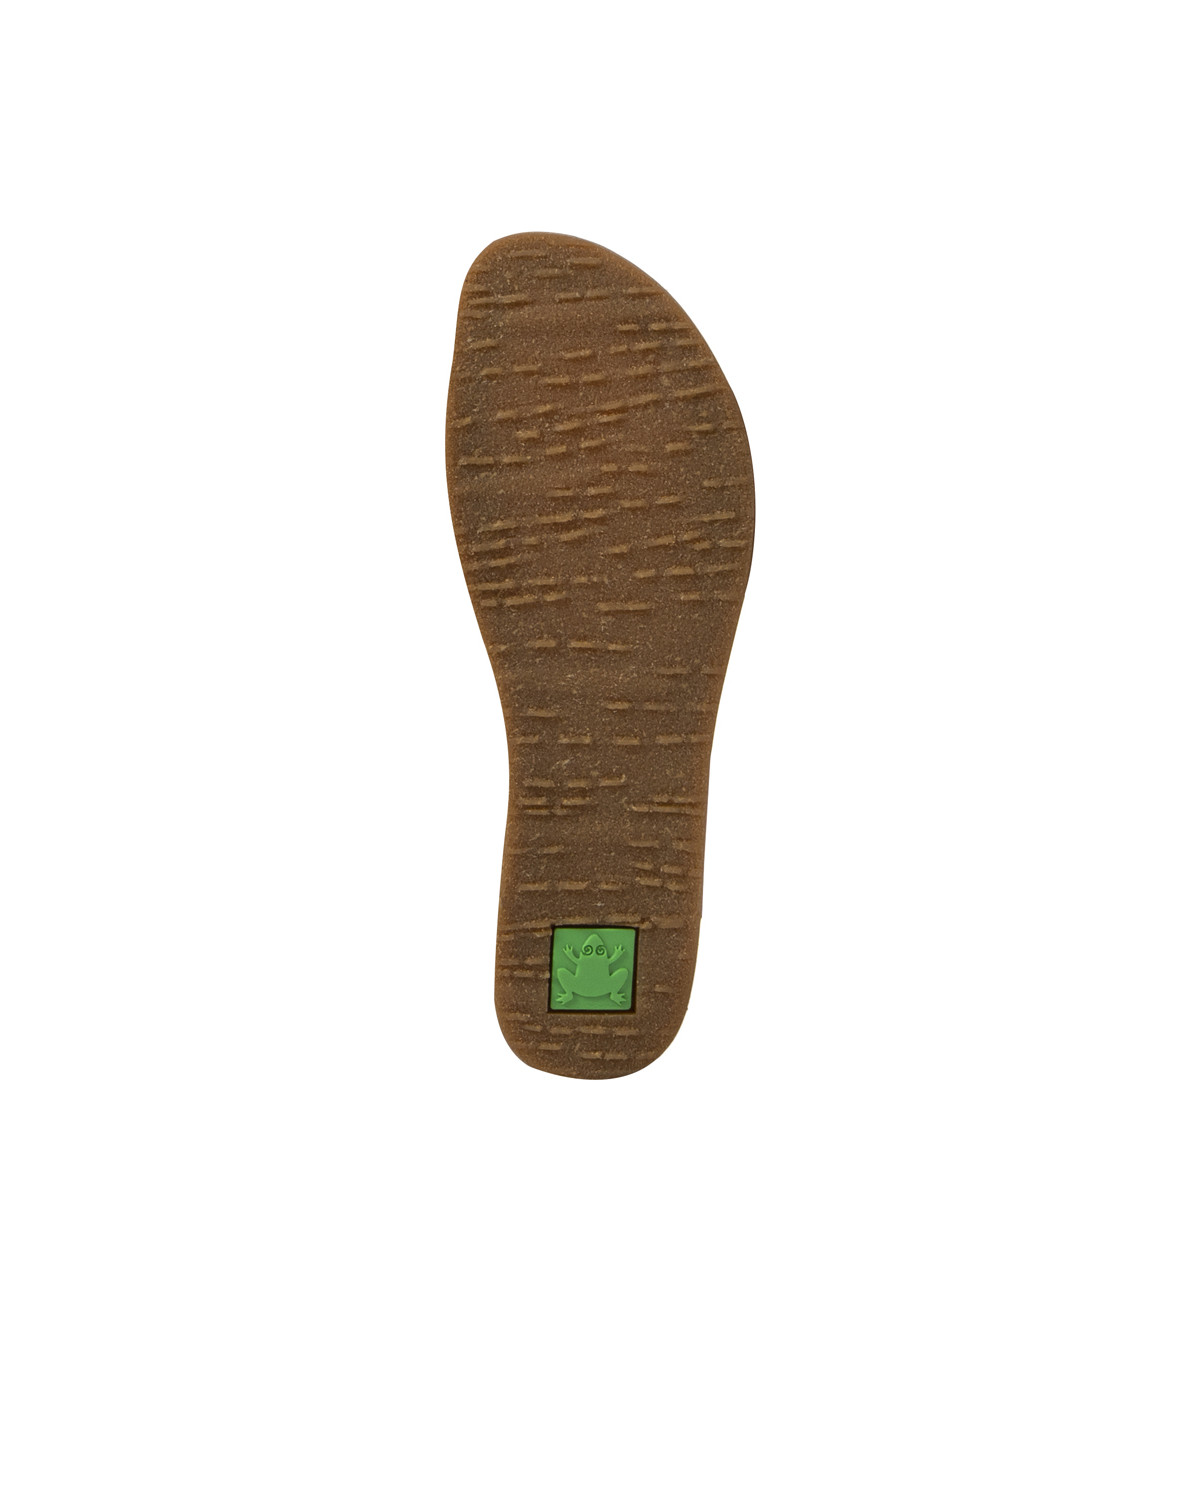 Sandales confortables plates en cuir à talon fermé - Bleu - El naturalista